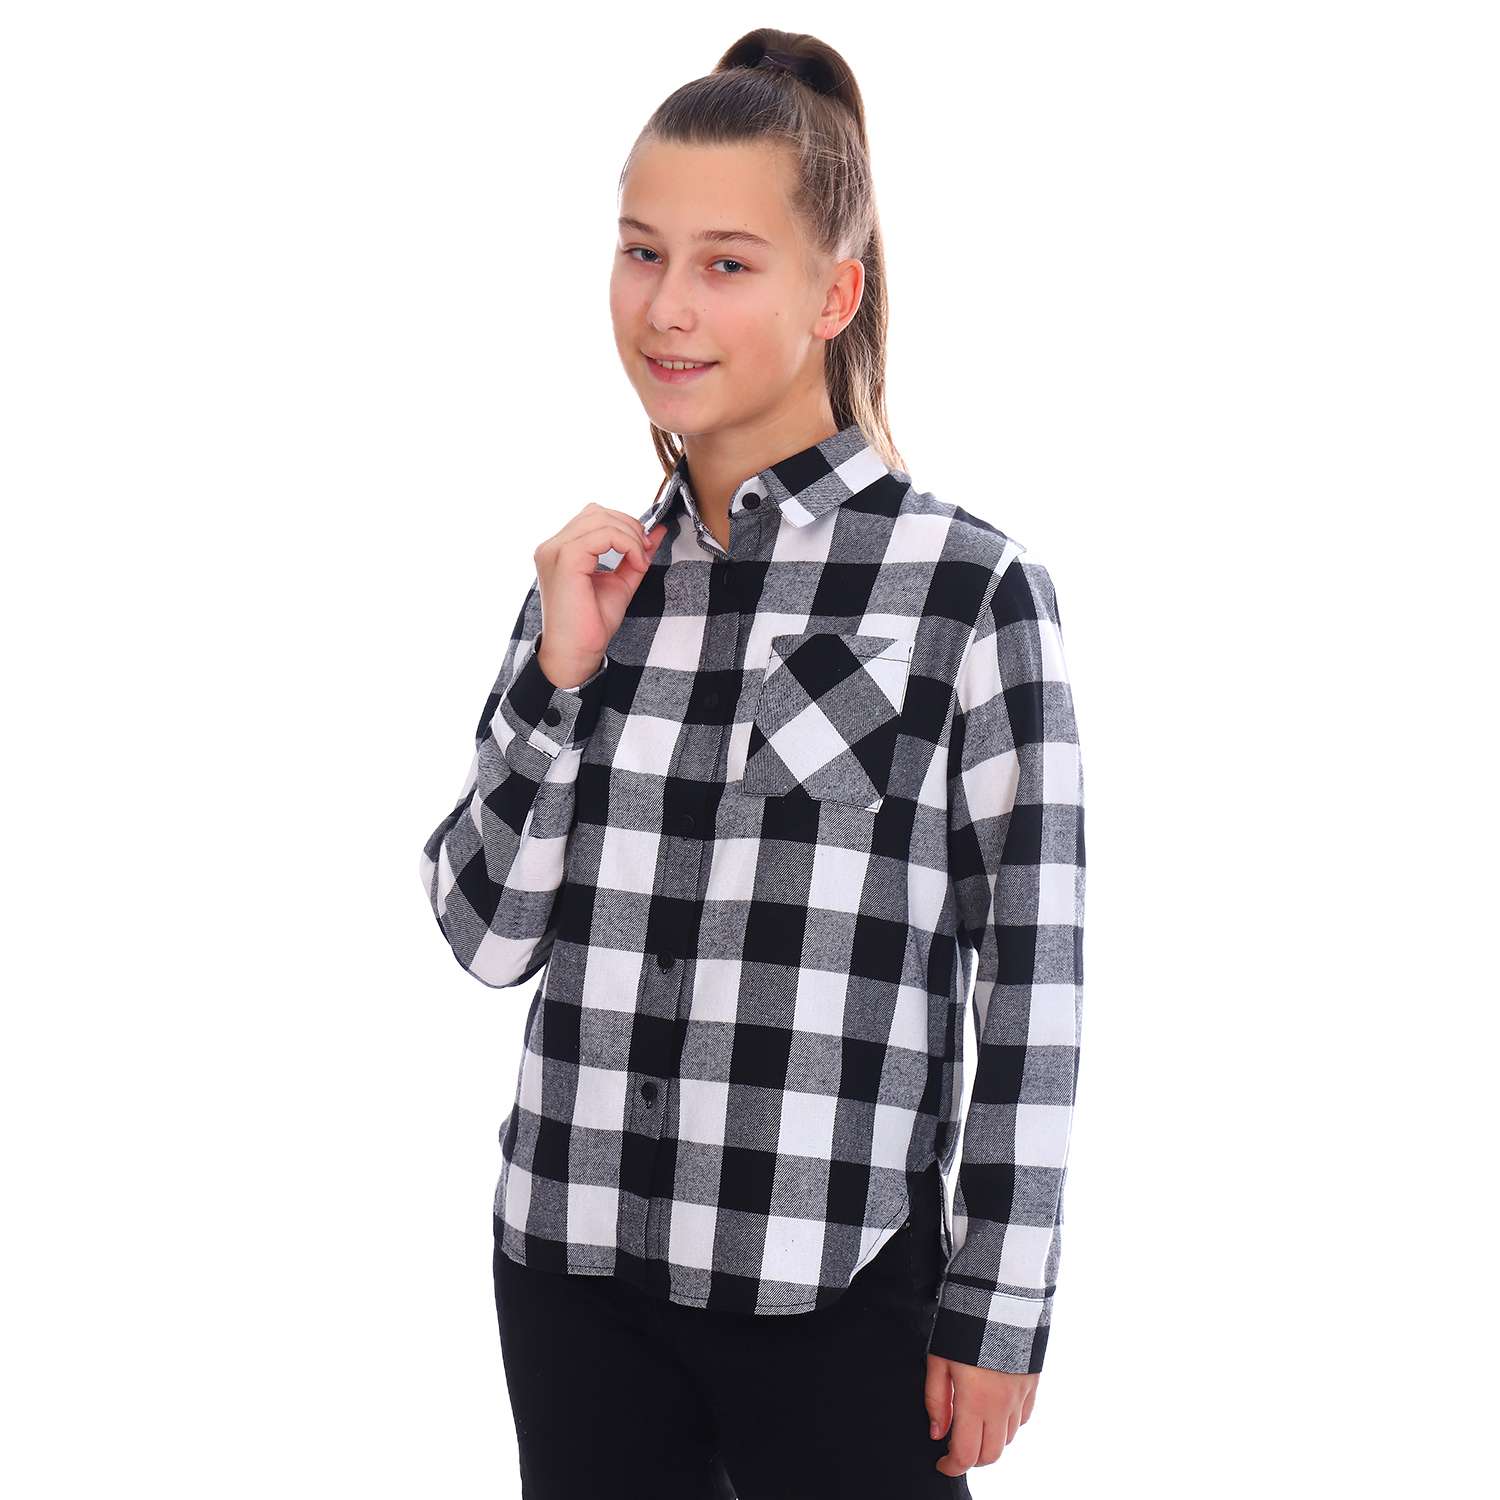 Рубашка Детская Одежда 4101Флн/белый_черный3 - фото 1